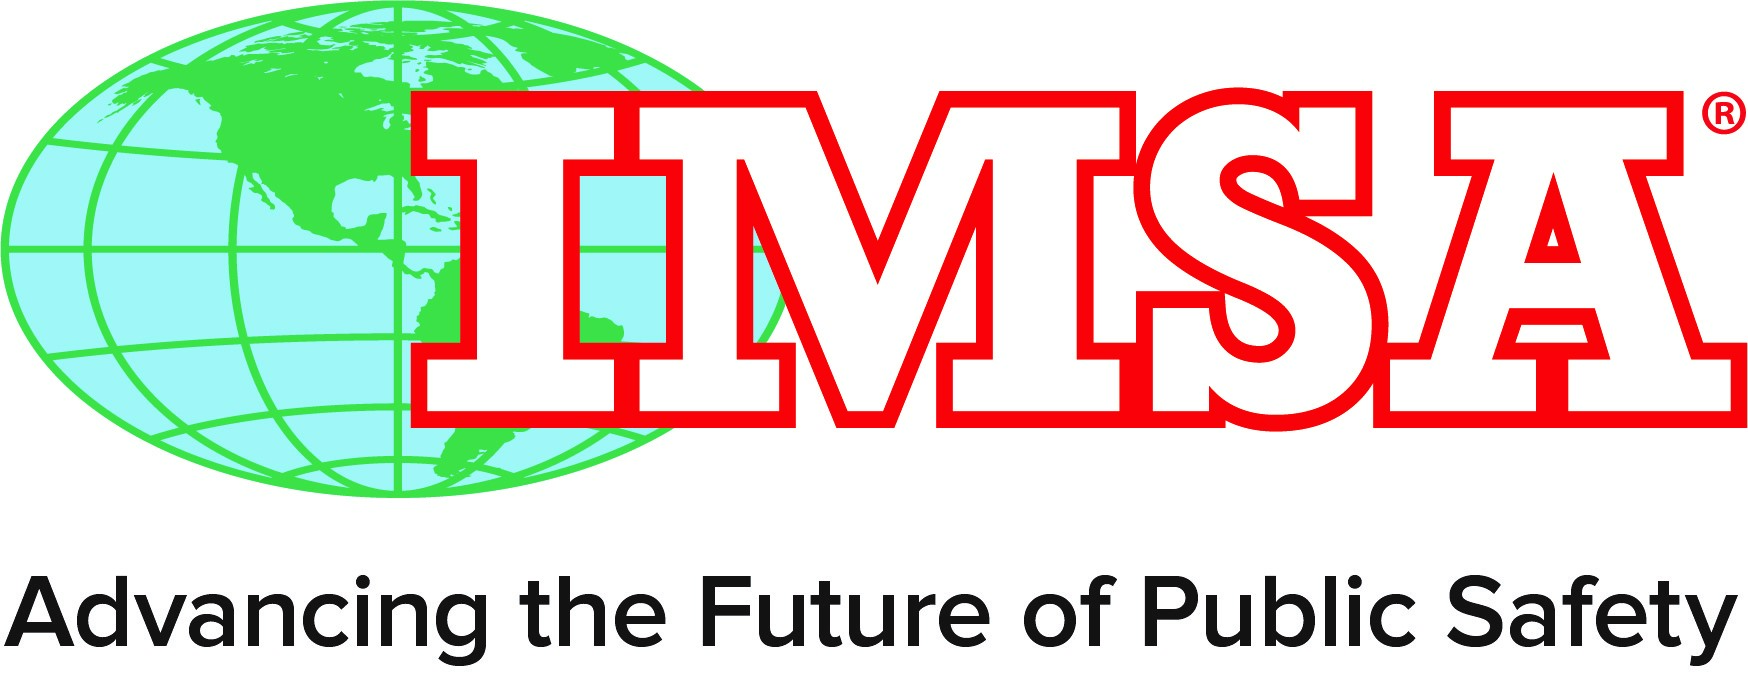 IMSA - International Municipal Signal Association